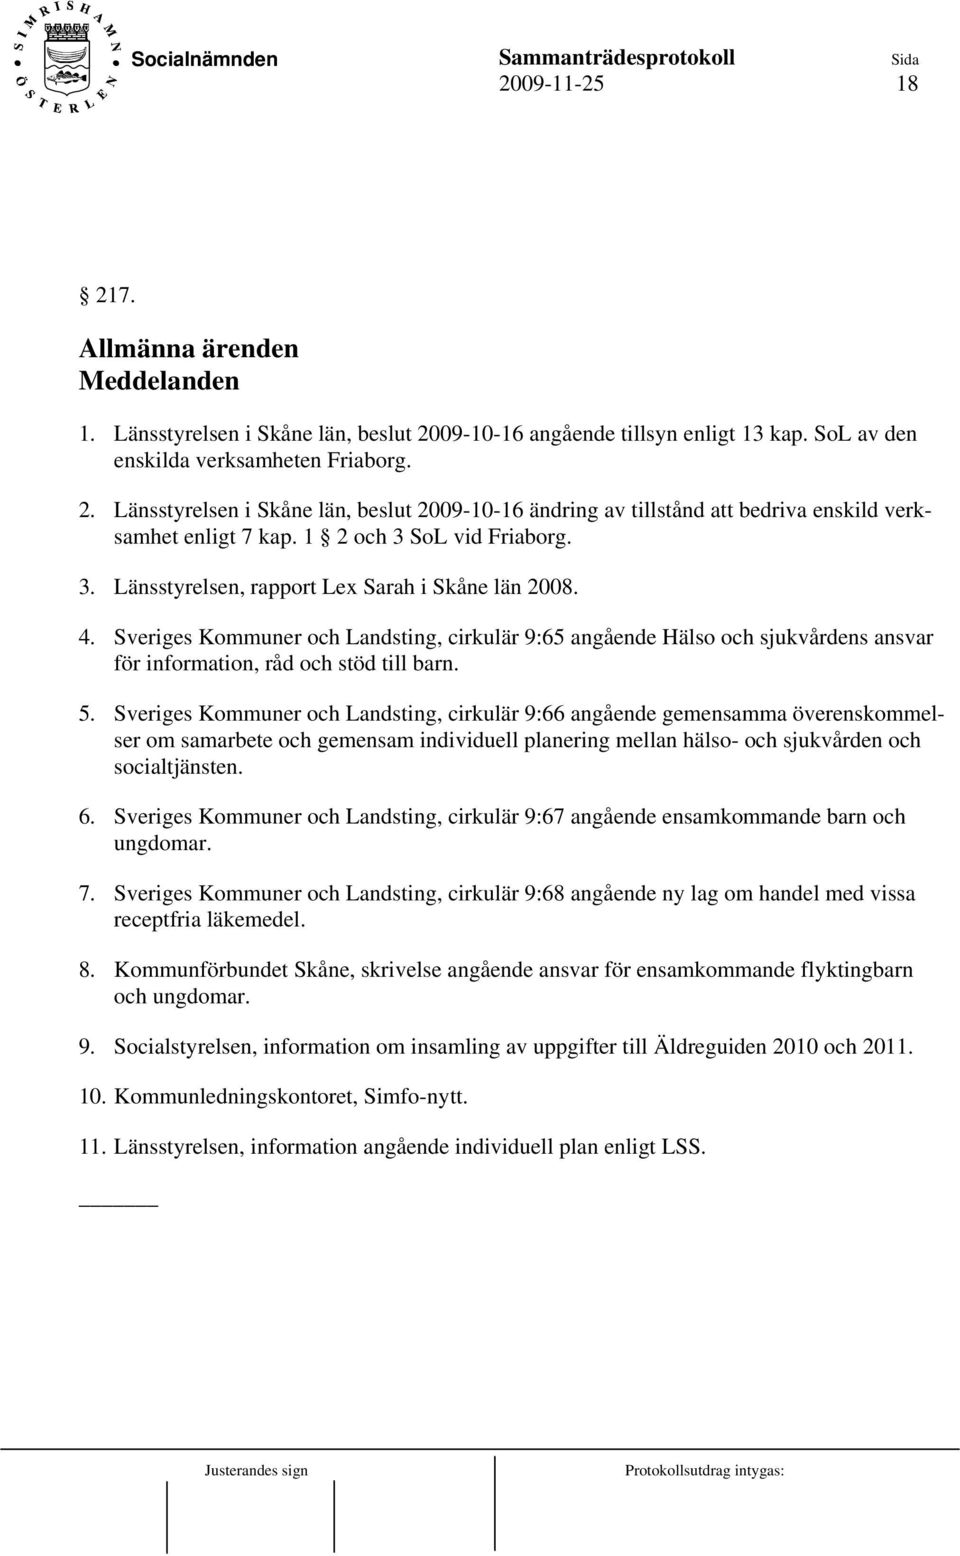 Sveriges Kommuner och Landsting, cirkulär 9:65 angående Hälso och sjukvårdens ansvar för information, råd och stöd till barn. 5.